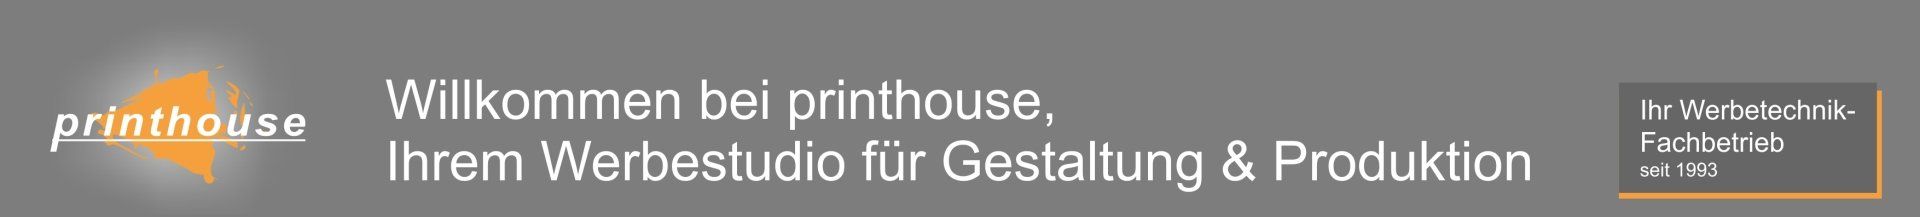 printhouse Ihr Werbestudio für Gestaltung & Produktion